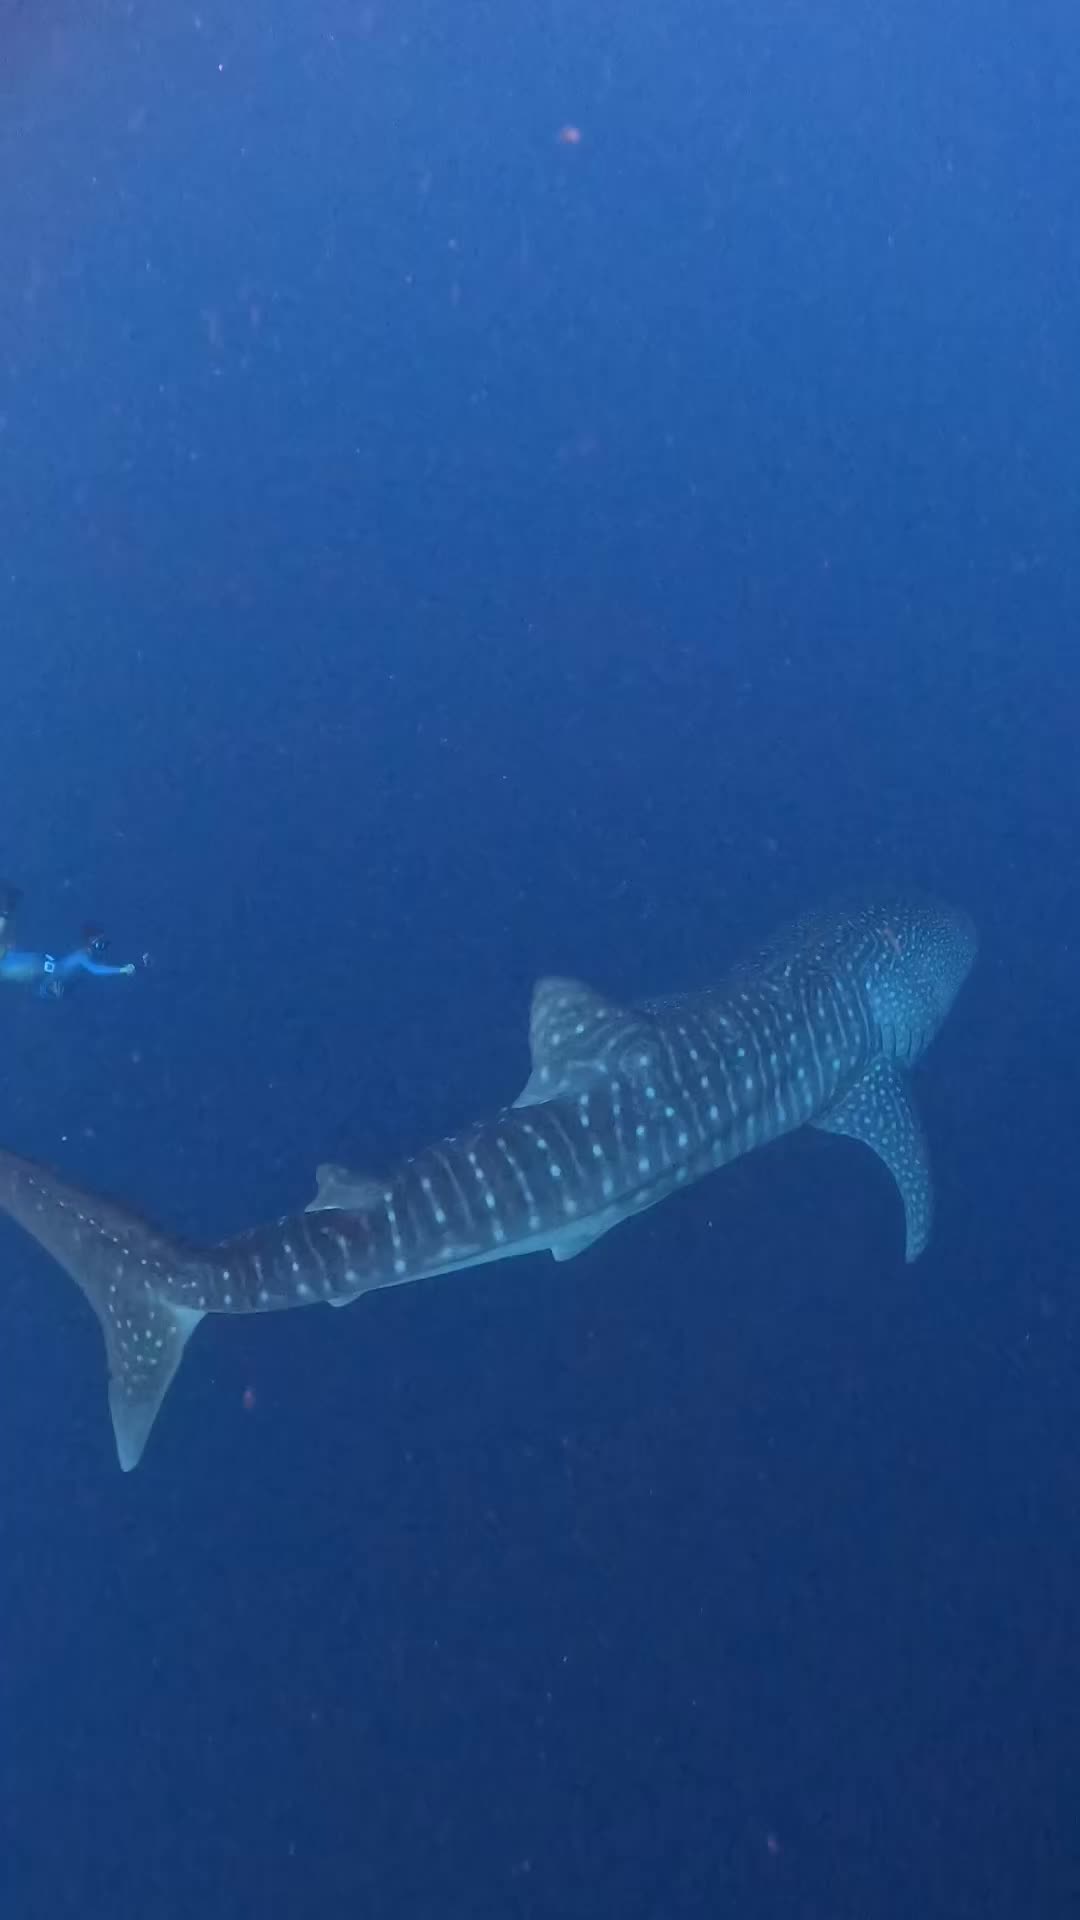 Ngejar Whaleshark terbesar (panjang 10 meter) di Sumbawa, sampai ke kedalaman 12 meter 🤩

Trip by @toscatour , ga ketemu Whaleshark, uang kembali ya bli @tripbarengyuda 

📍 Teluk Saleh, Sumbawa, NTB 🇮🇩

#whaleshark #teluksaleh #whalesharks